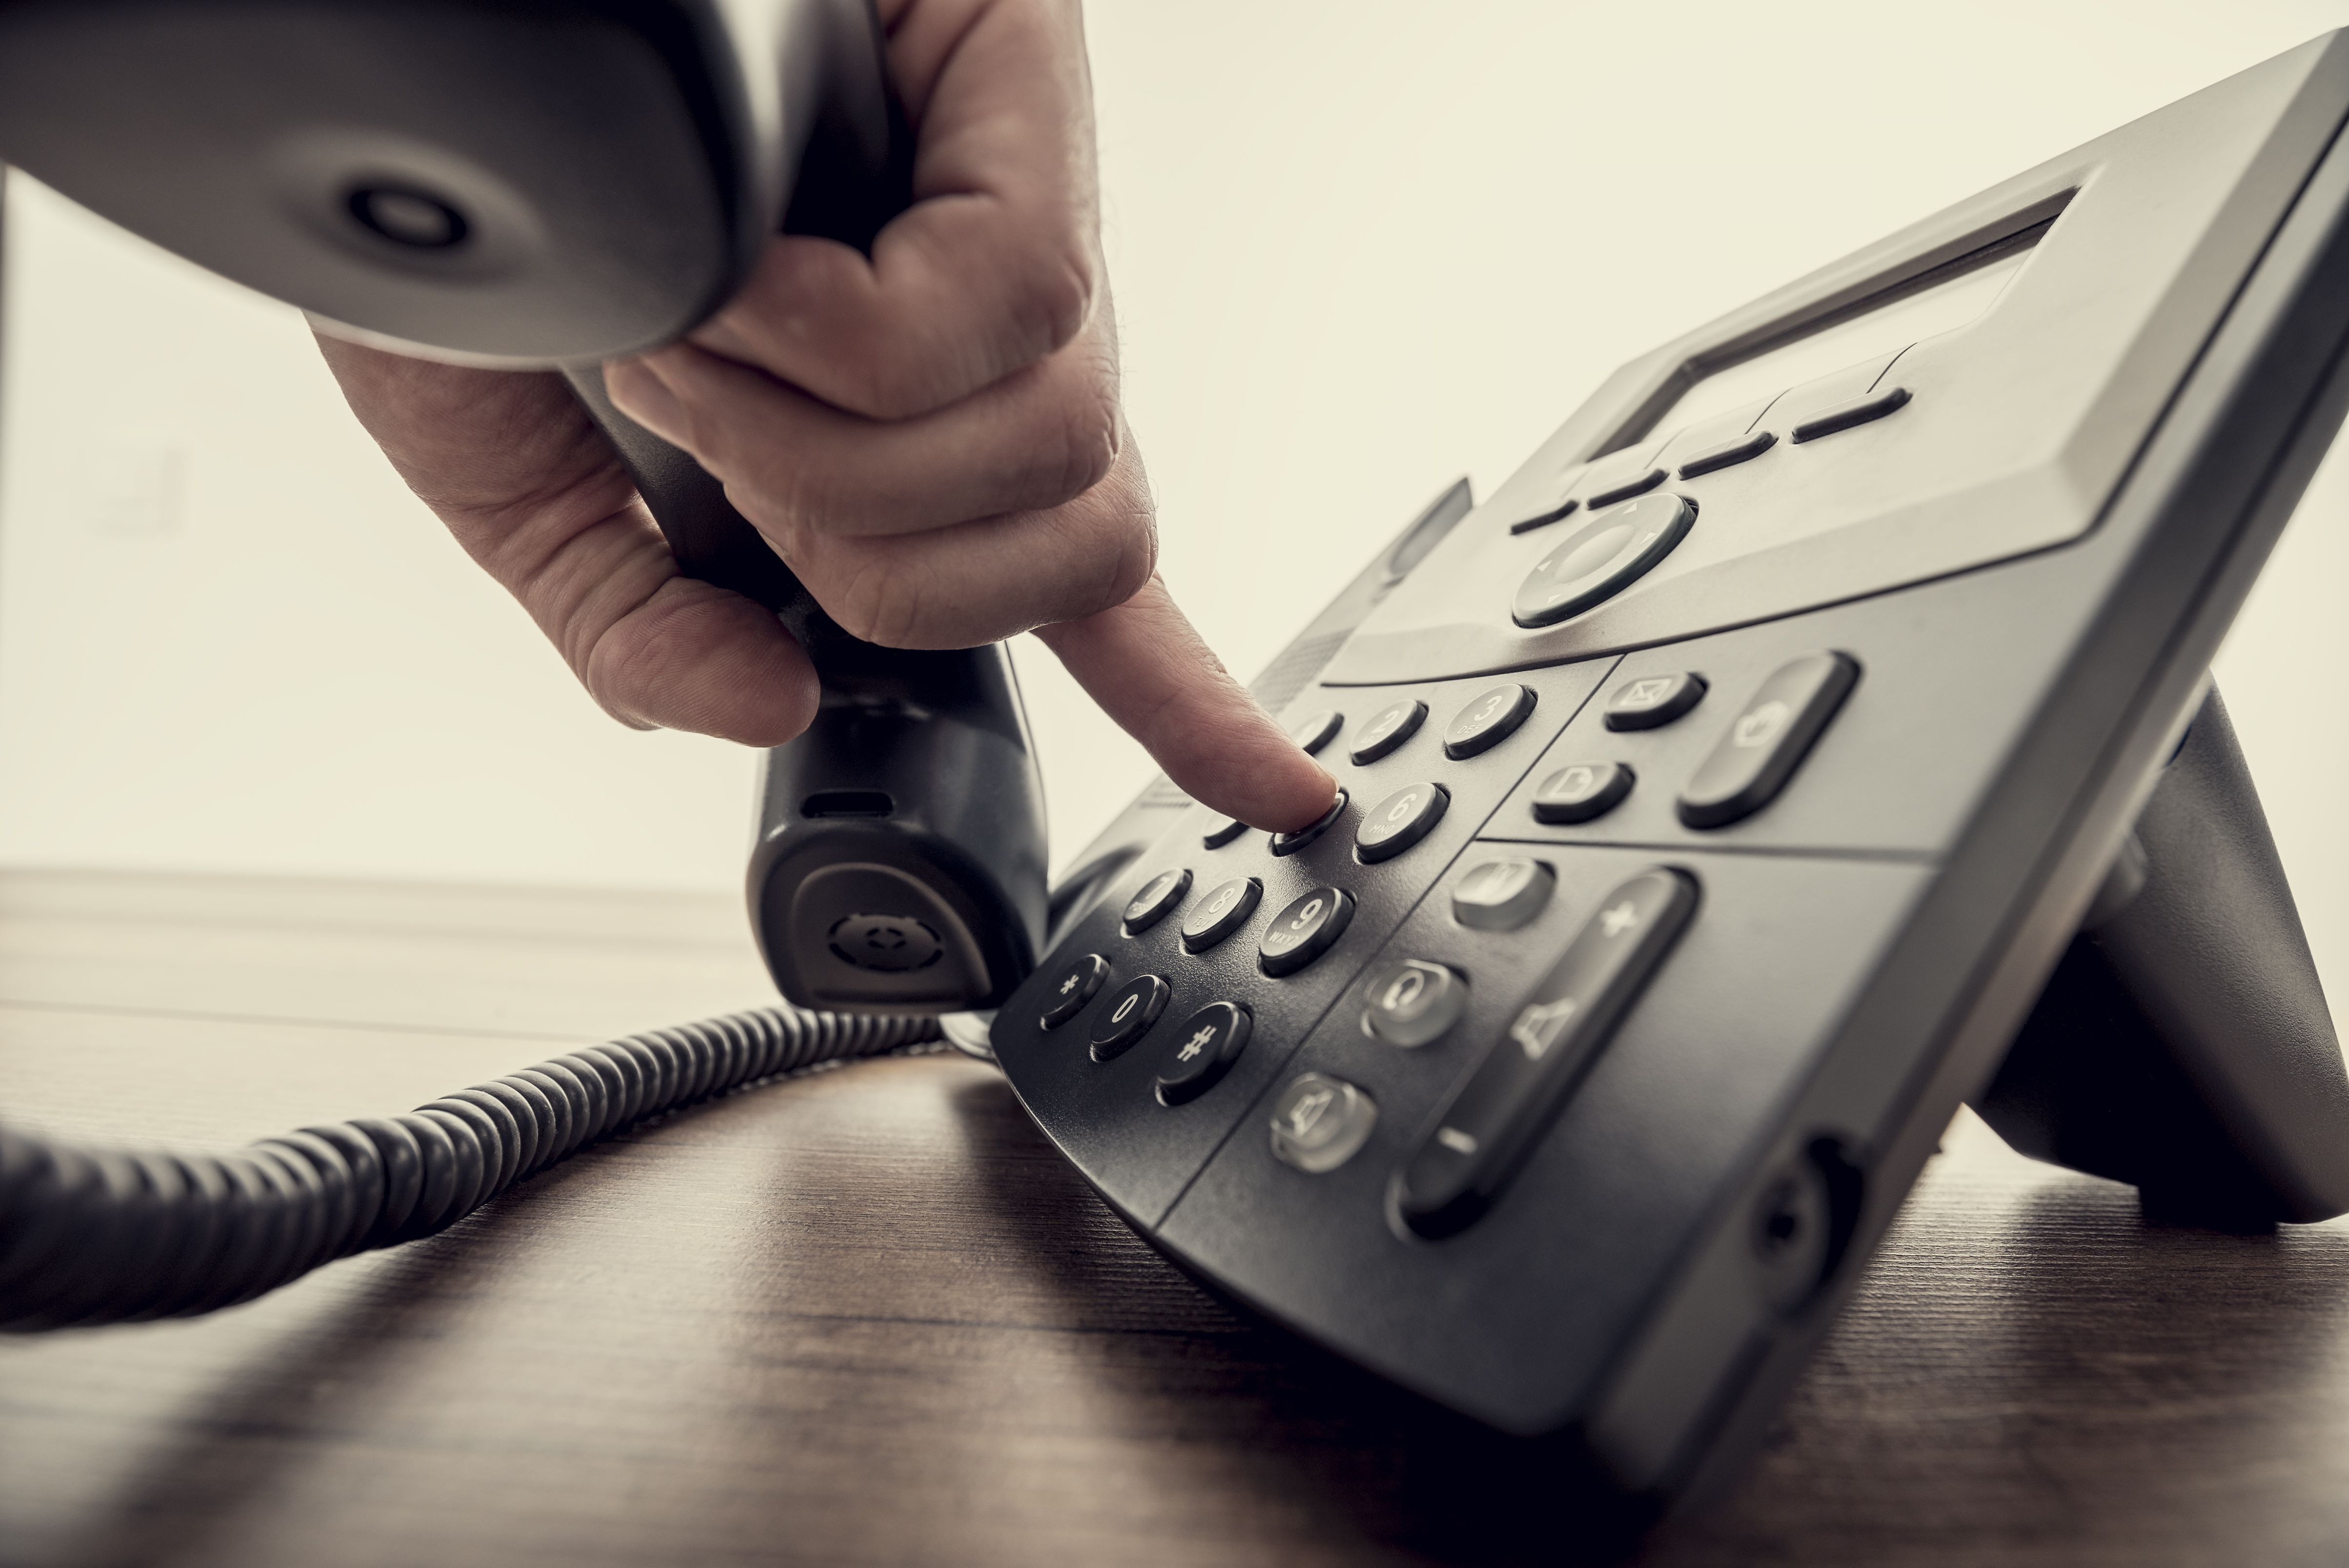 Tippek a hamis telefonszámos csalás kivédésére